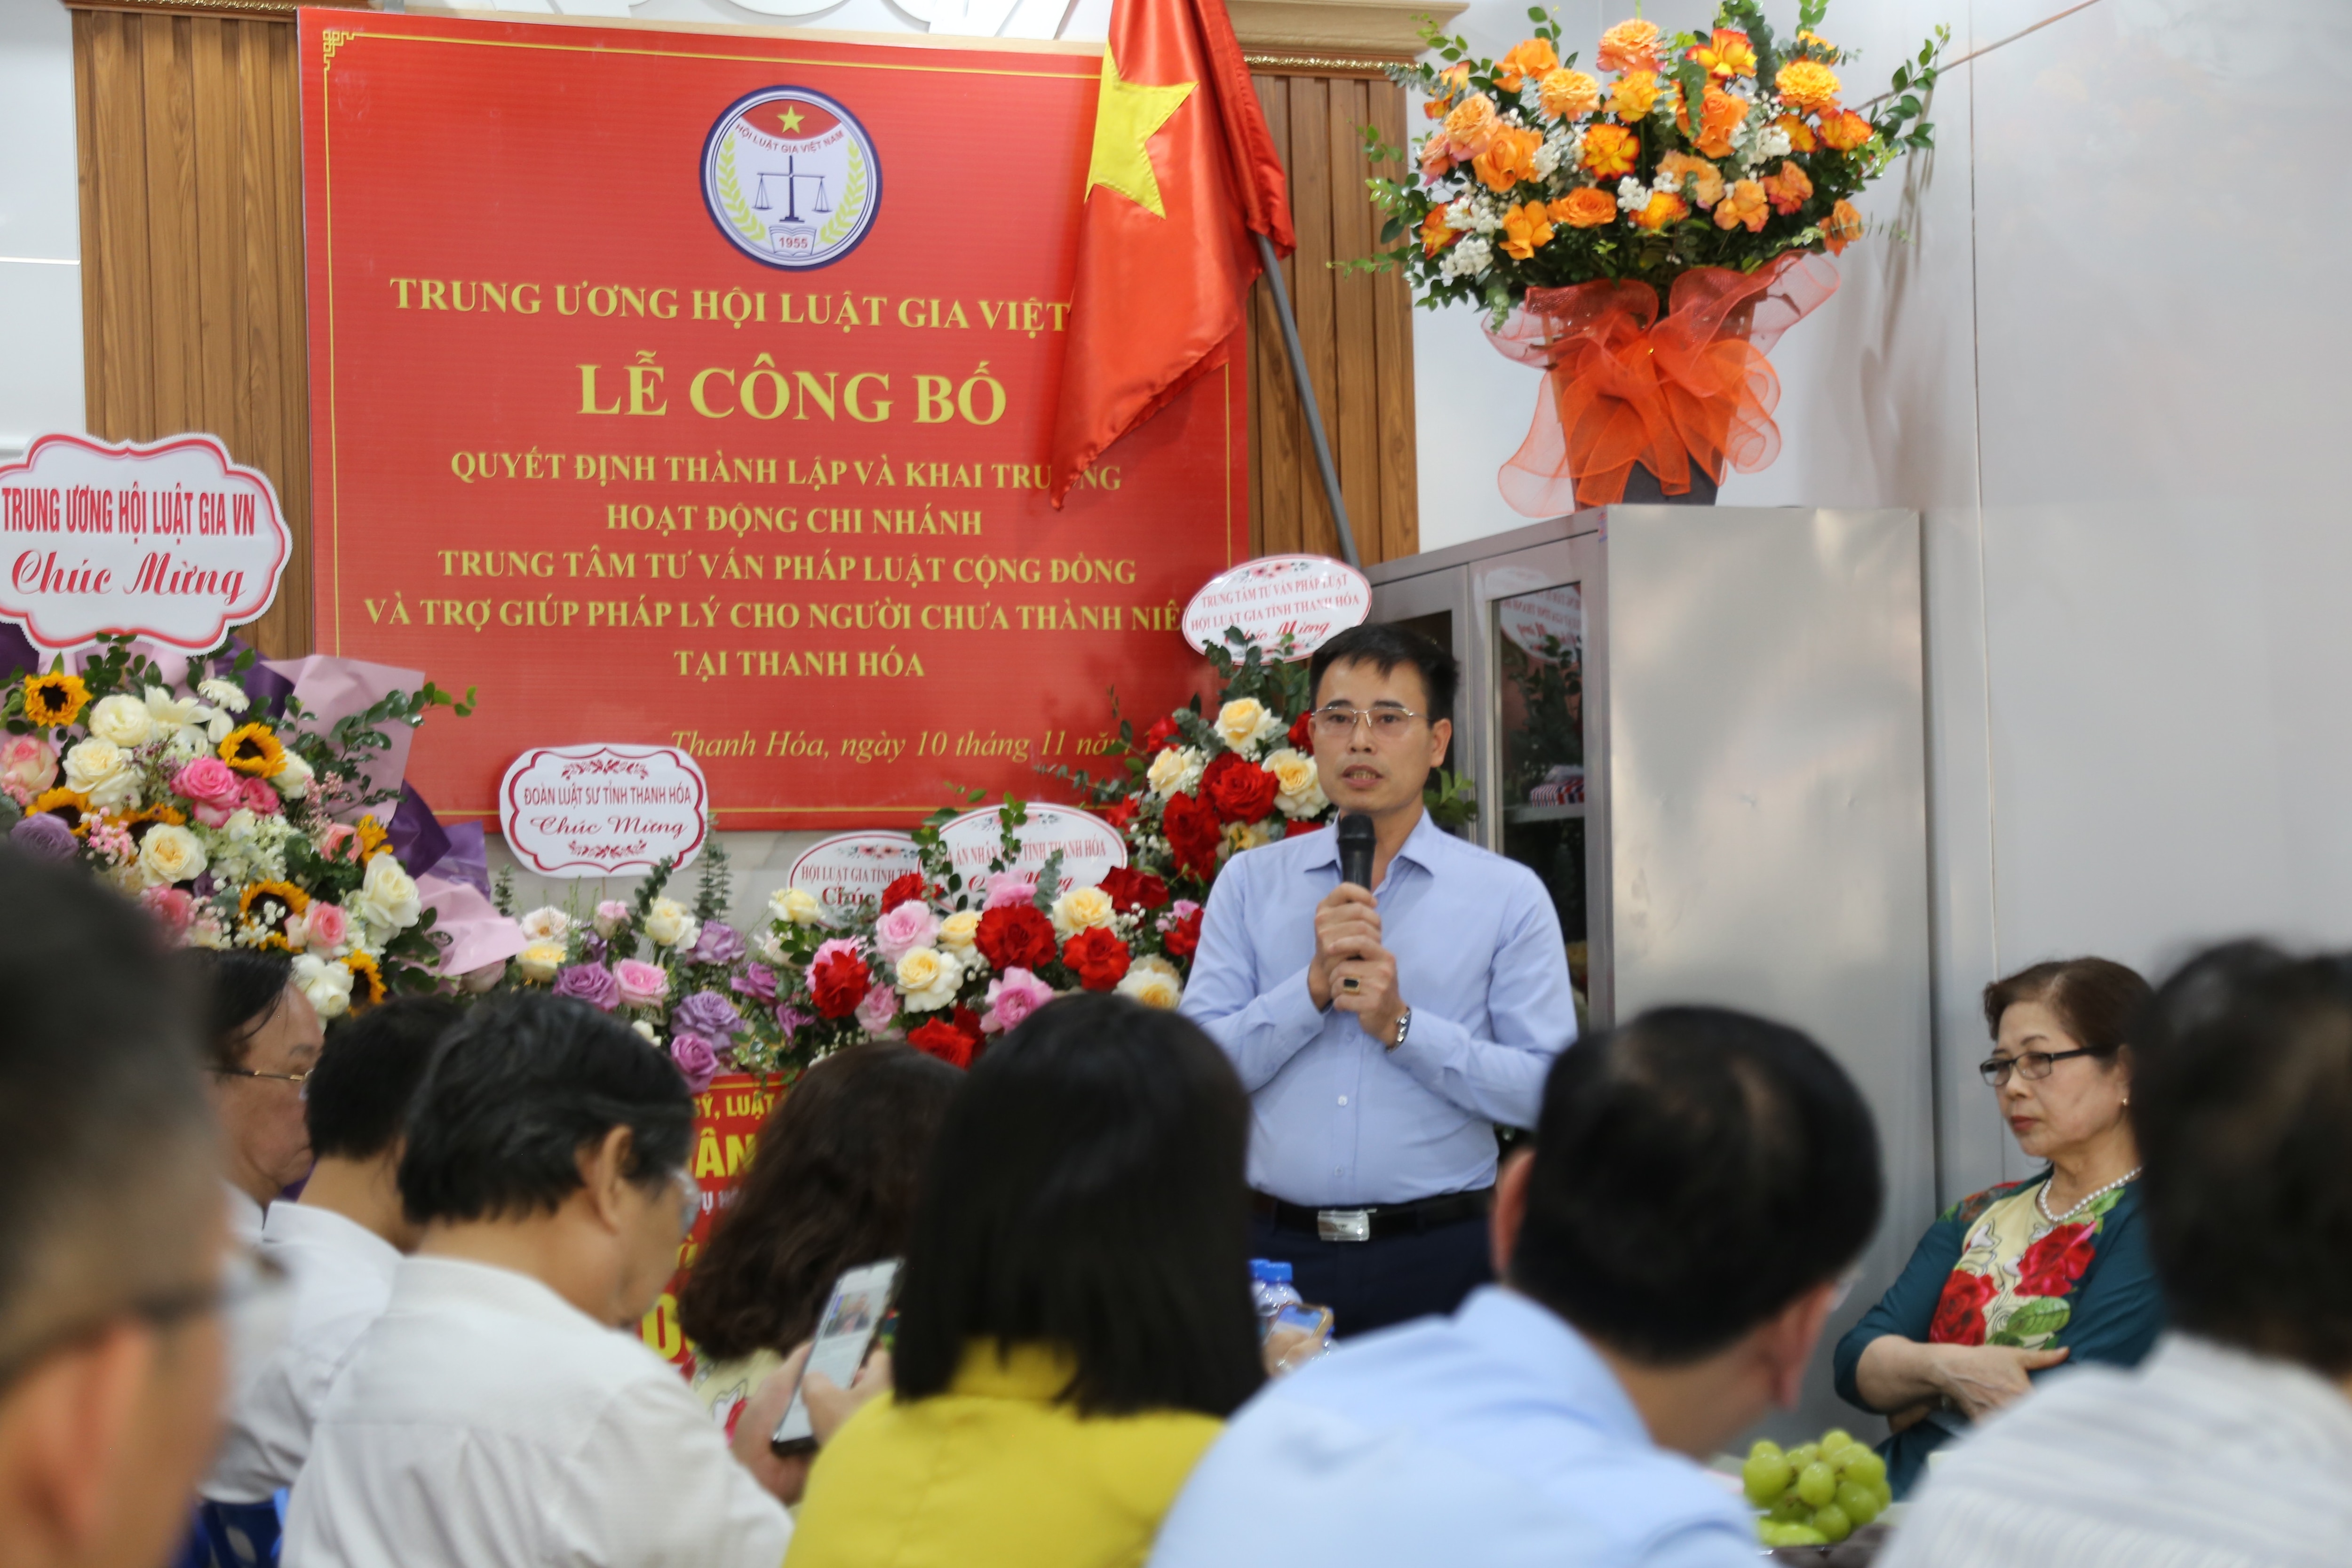 Sự kiện - Thành lập chi nhánh thứ 5 của Trung tâm Tư vấn pháp luật cho người chưa thành niên tại Thanh Hoá (Hình 5).